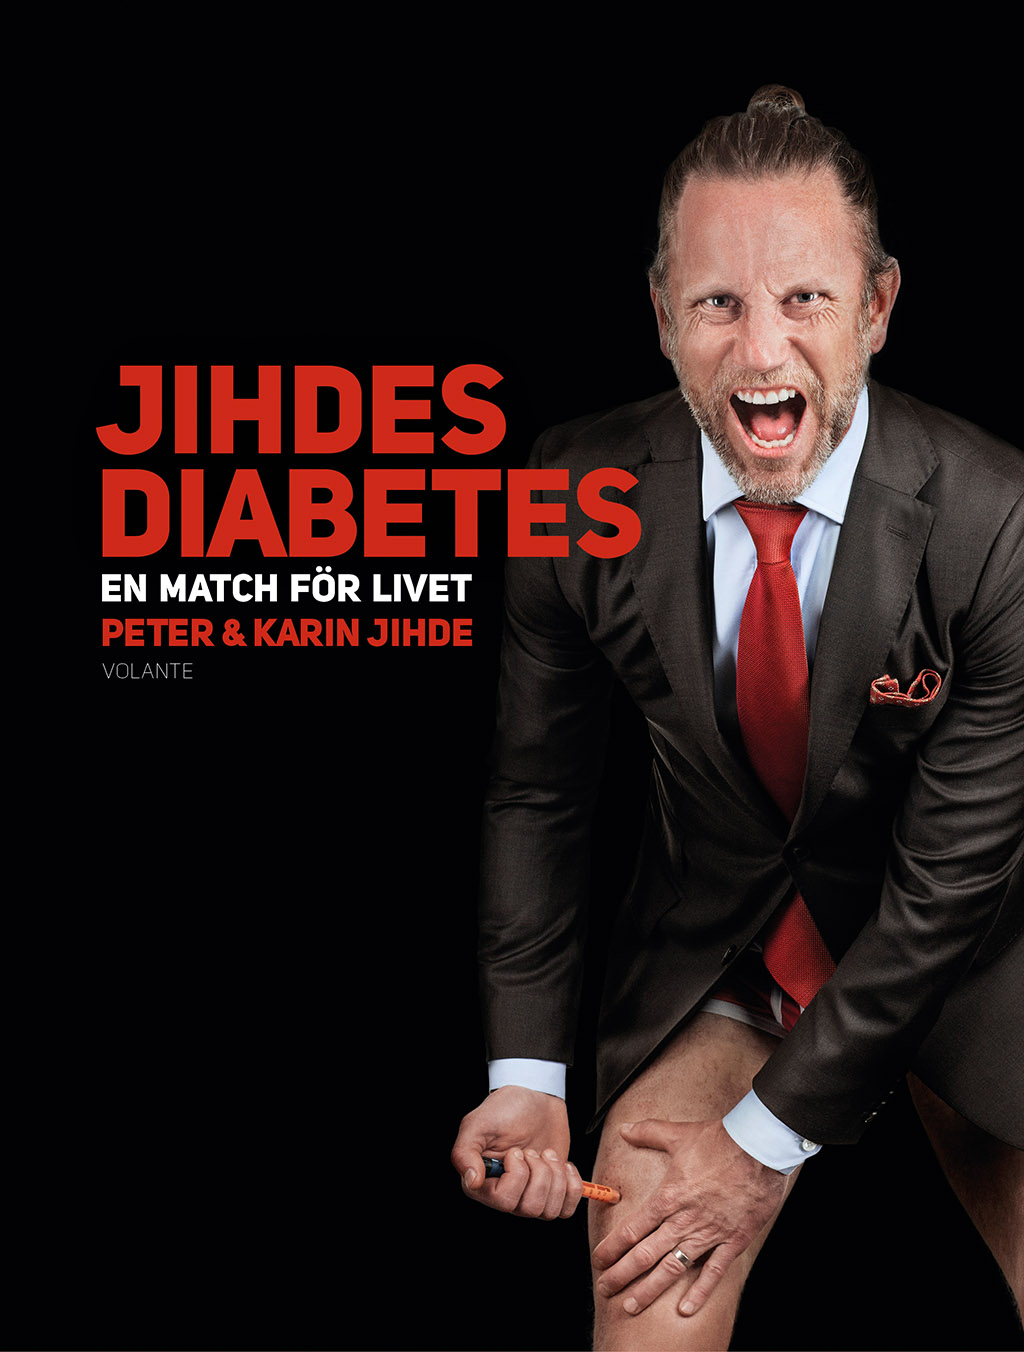 Jihdes diabetes